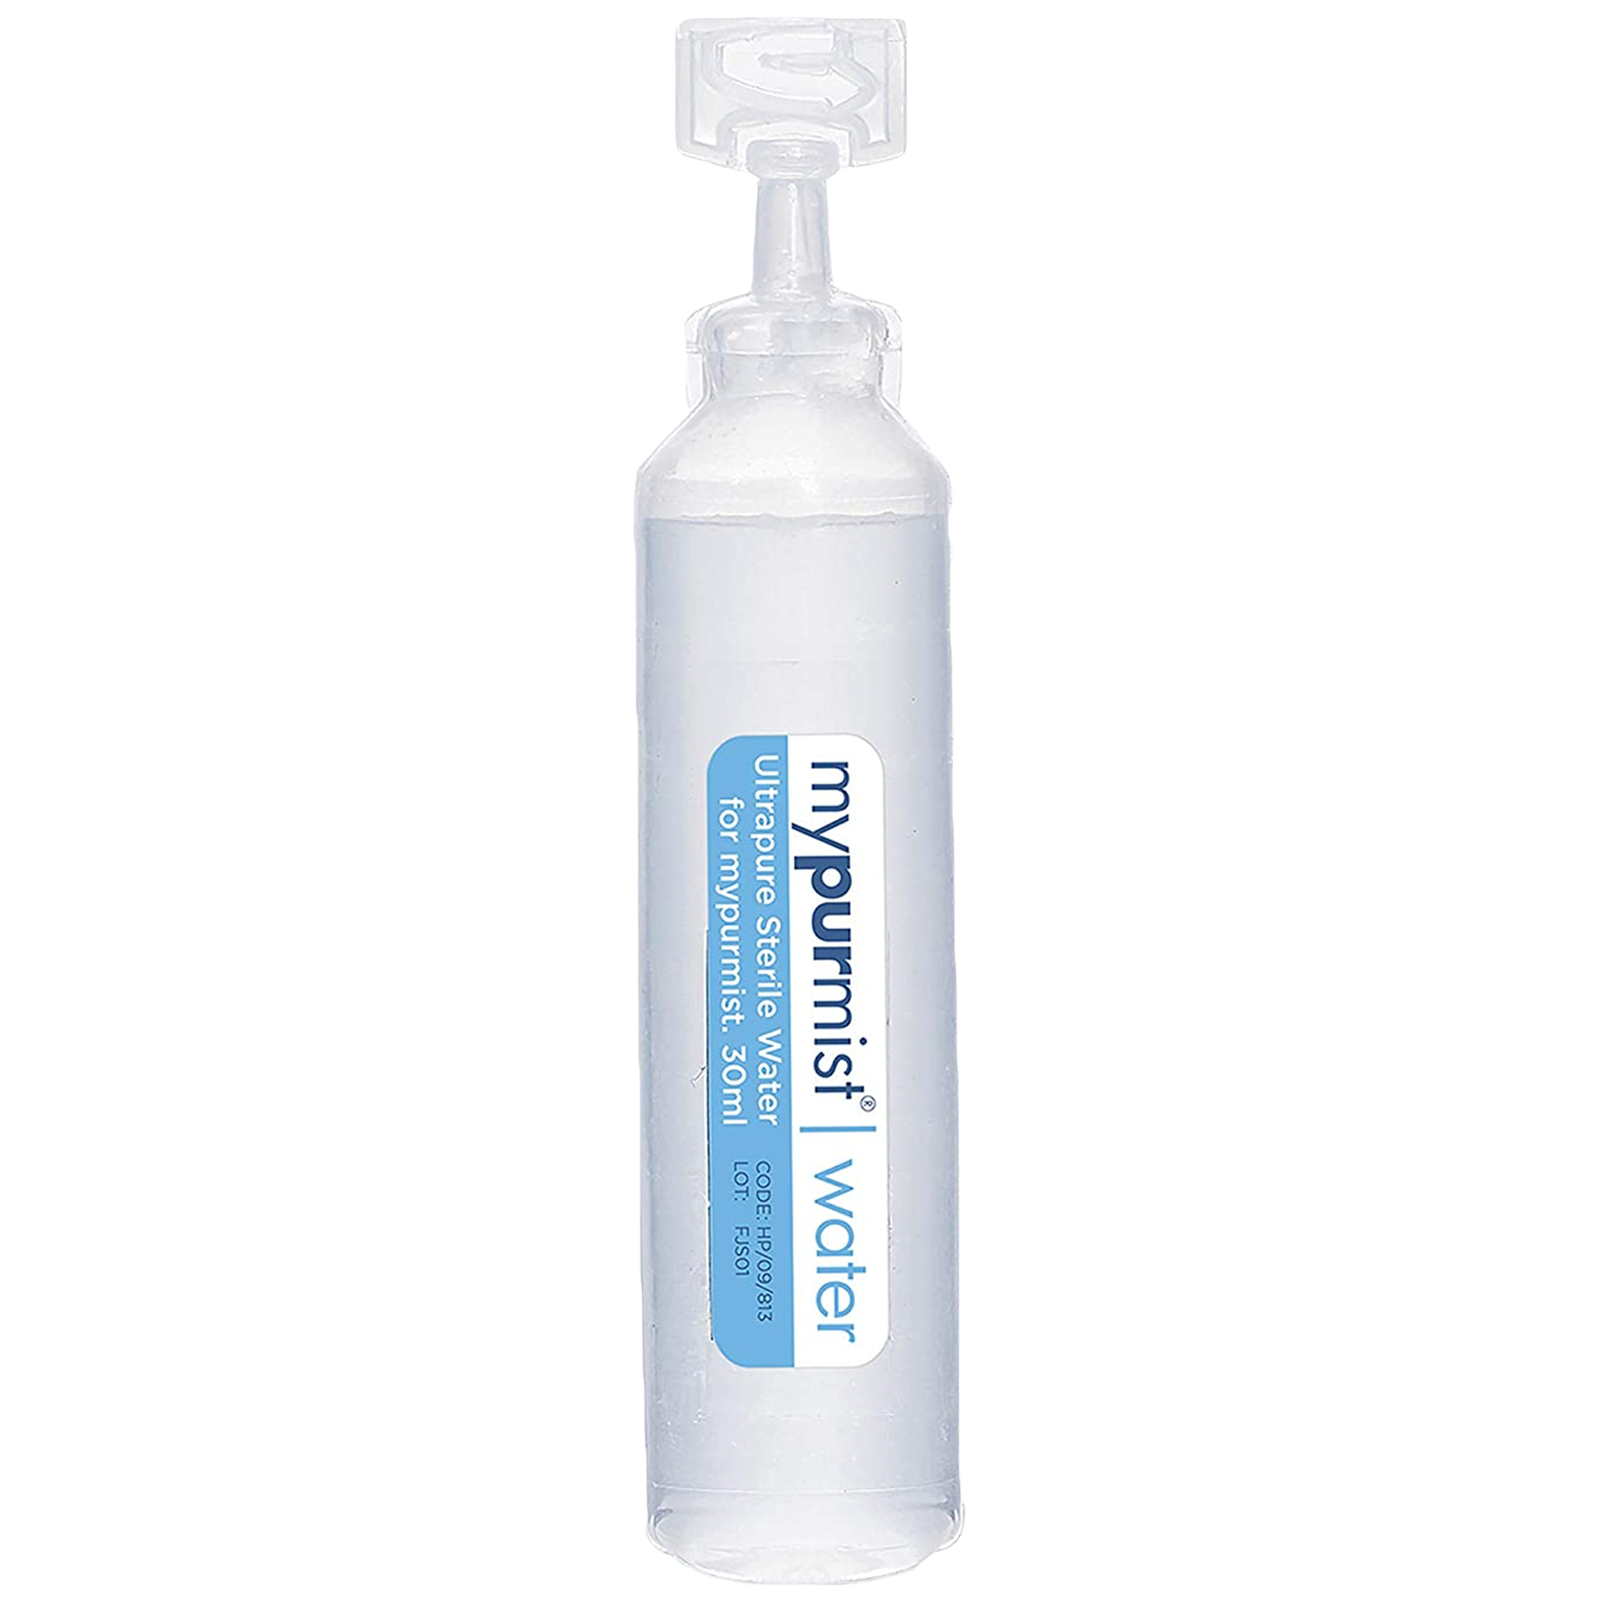 Mypurmist Ultrapure Sterile Water Facial Steamer (20 Refills, NI1917, White)